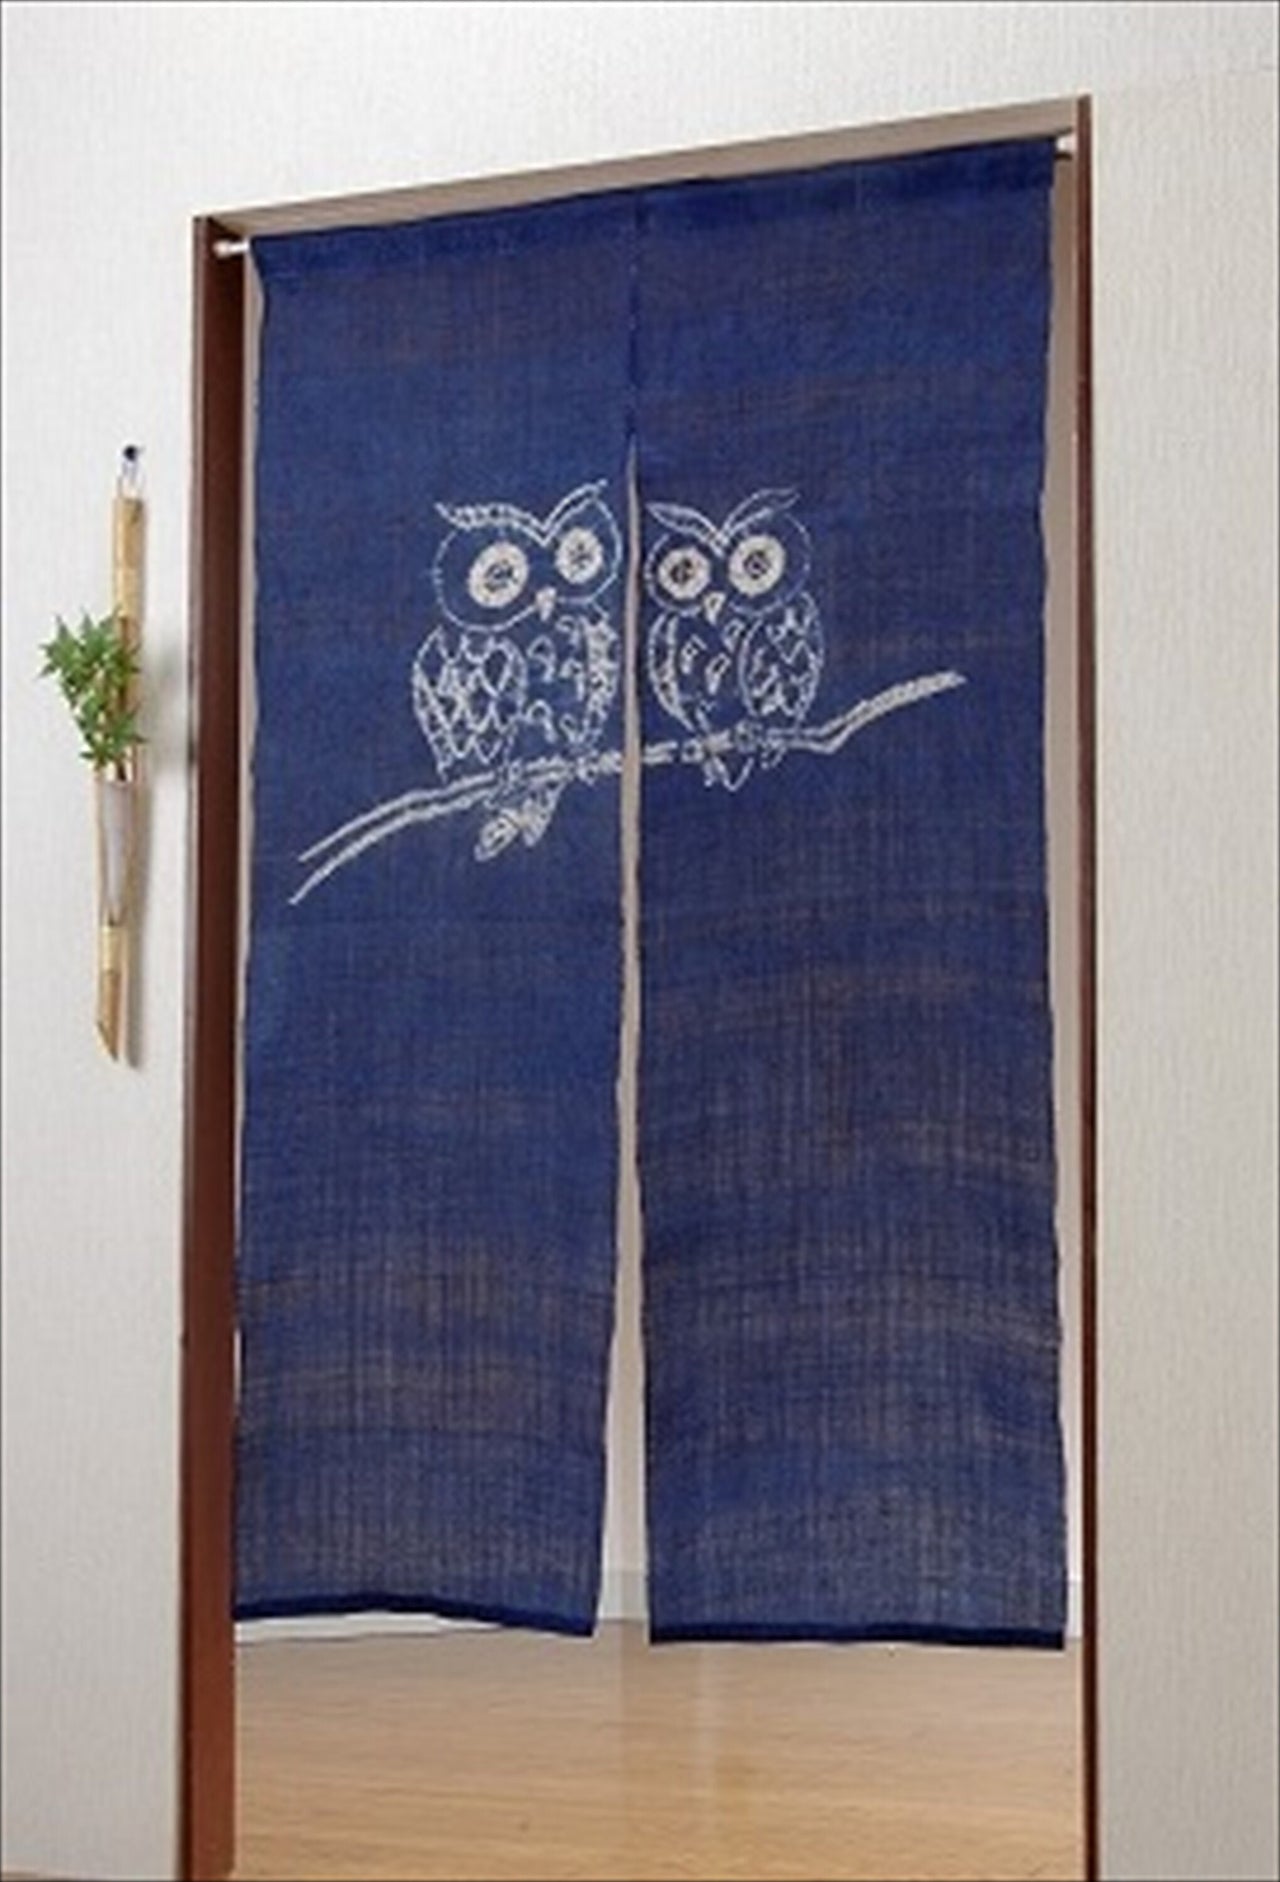 100％ Linen Hemp Owl Japanese art Modern tapestry 90×150cm Noren door curtain Wall hanging